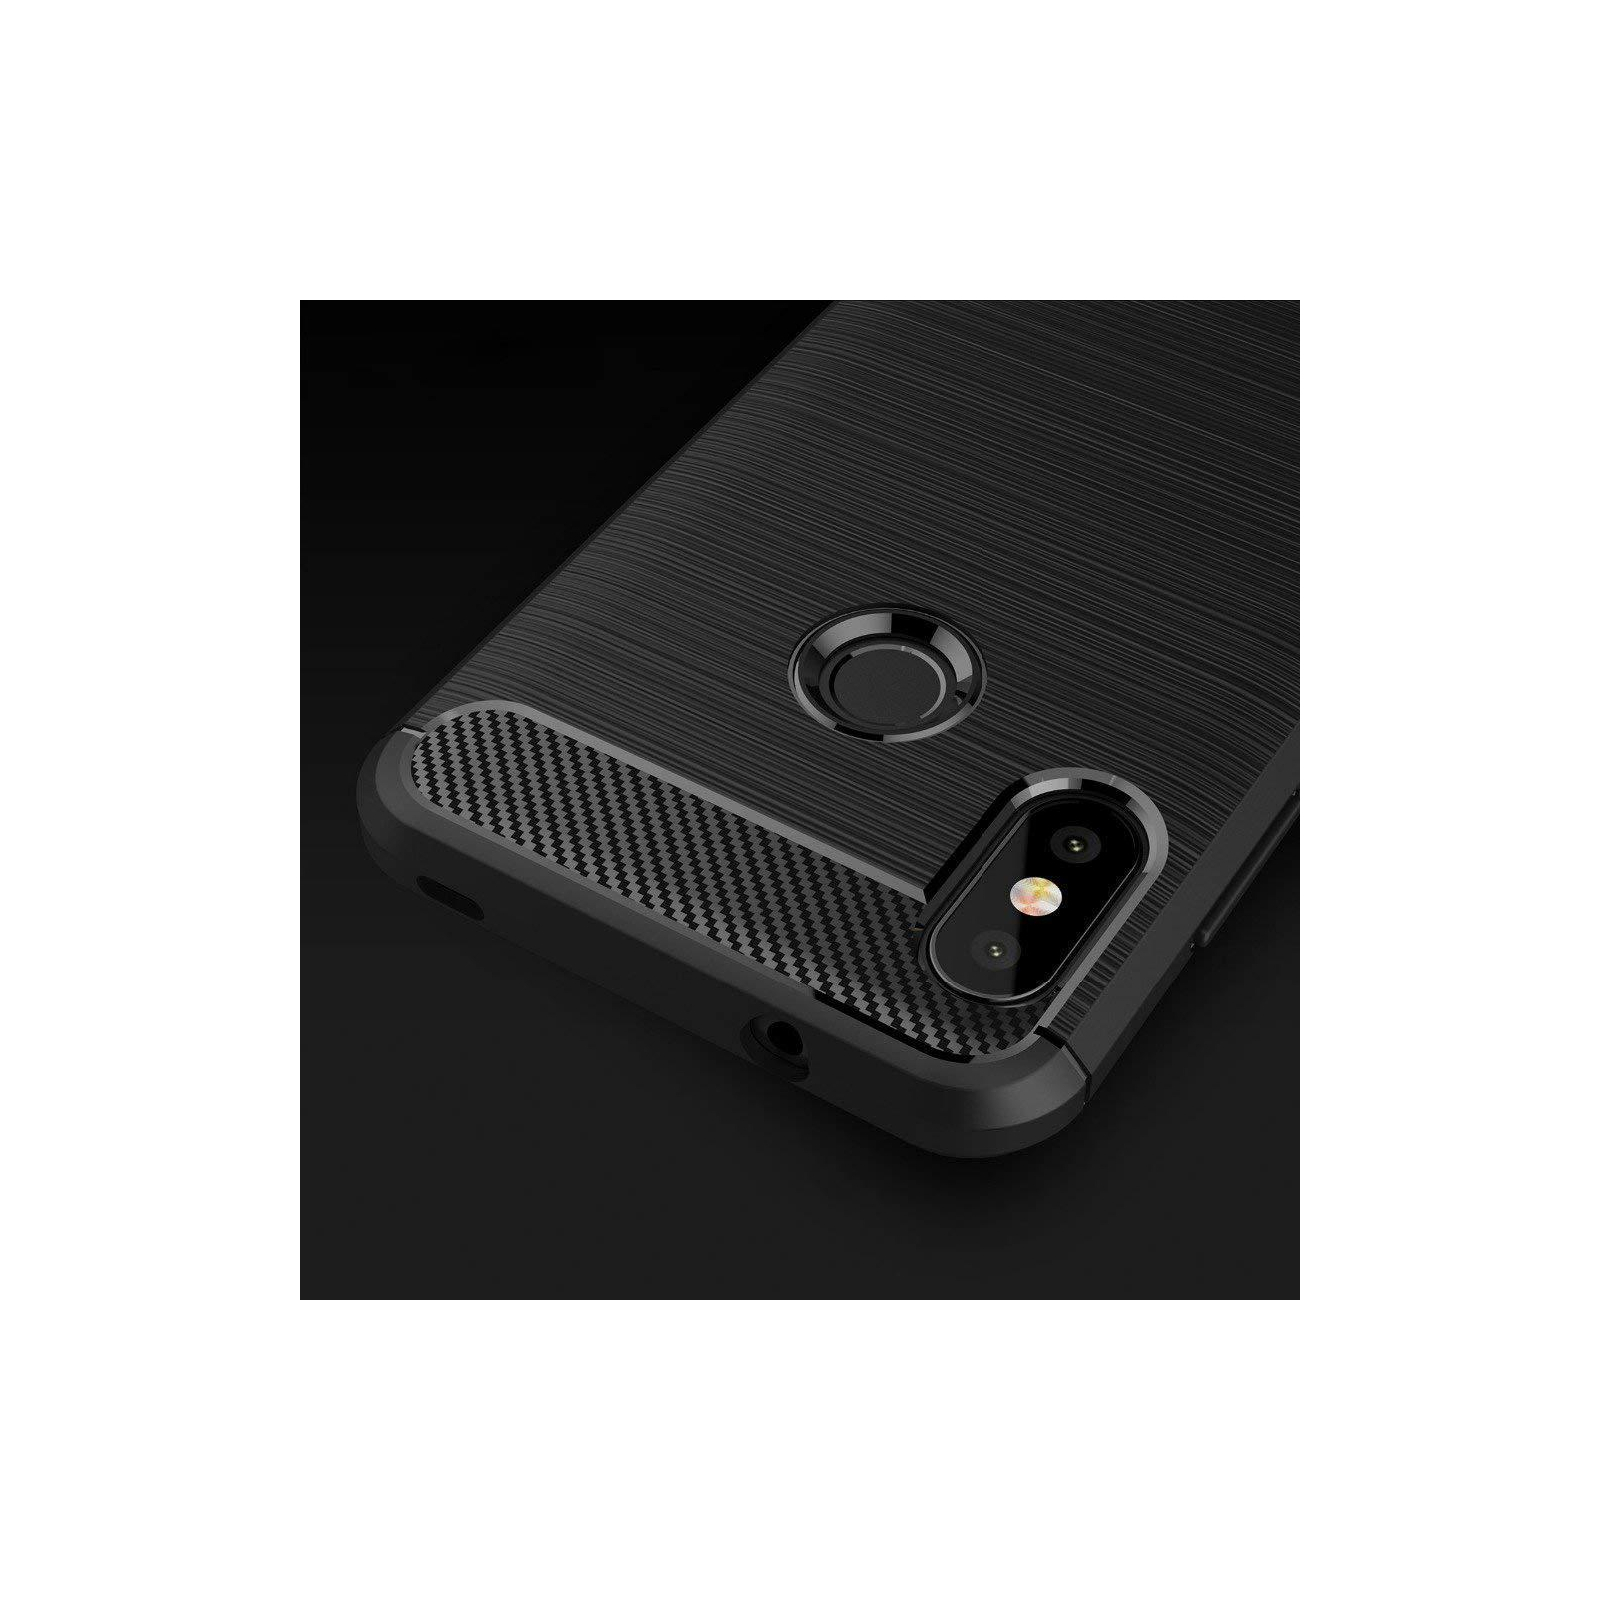 Чехол для мобильного телефона Laudtec для Xiaomi Mi A2 Lite Carbon Fiber (Black) (LT-Mi6P) изображение 12